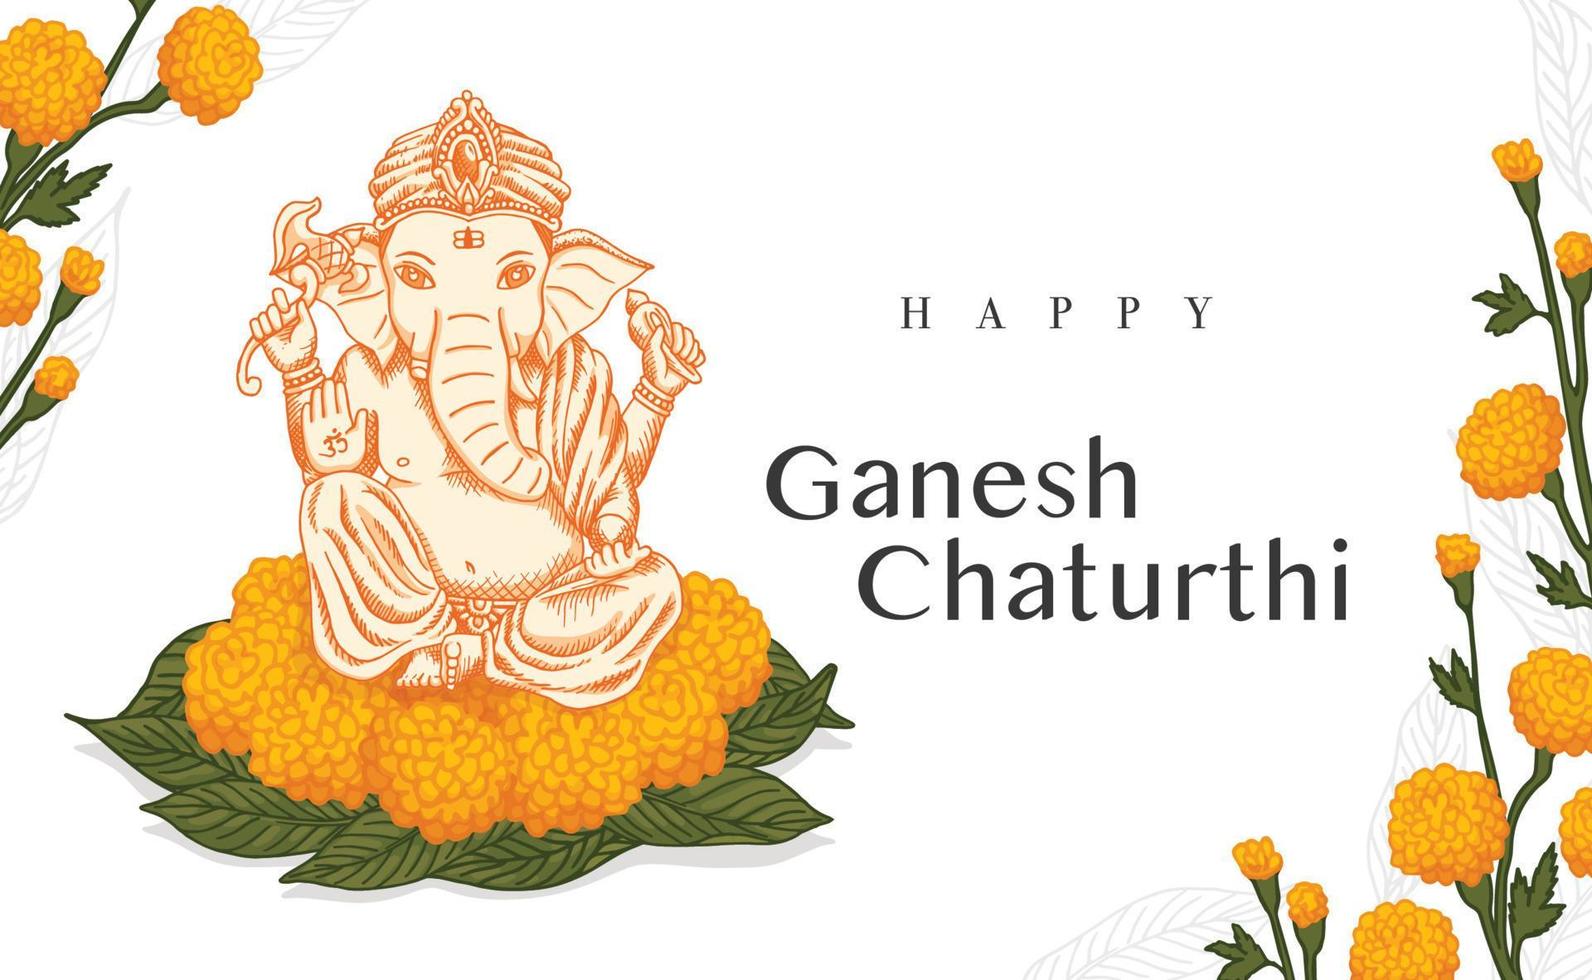 celebre a adoração do elefante ganesh chaturthi com adoração flores amarelas e folha de manga retrô arte de linha antiga vetor de gravura